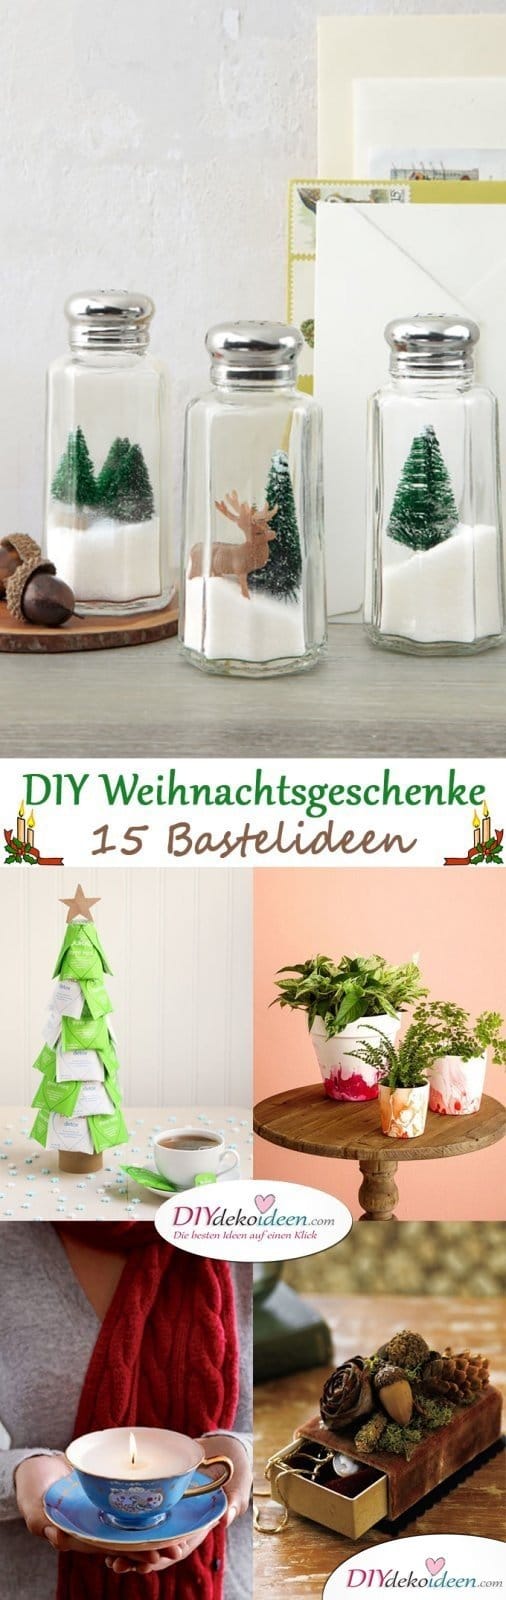 Persönliche DIY Weihnachtsgeschenke für deine Lieben - 15 DIY Bastelideen